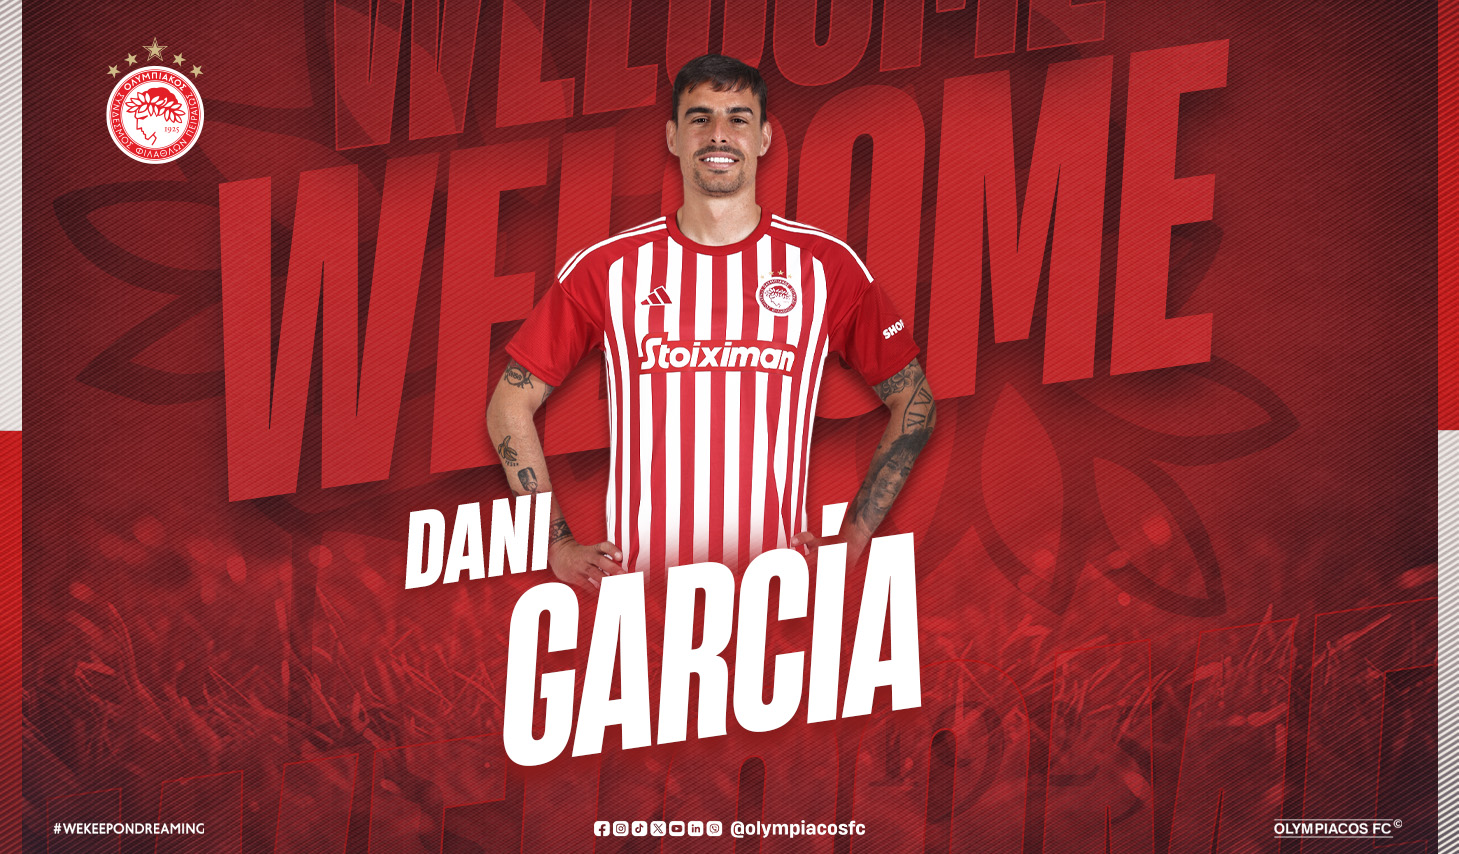 Dani García joins Olympiacos